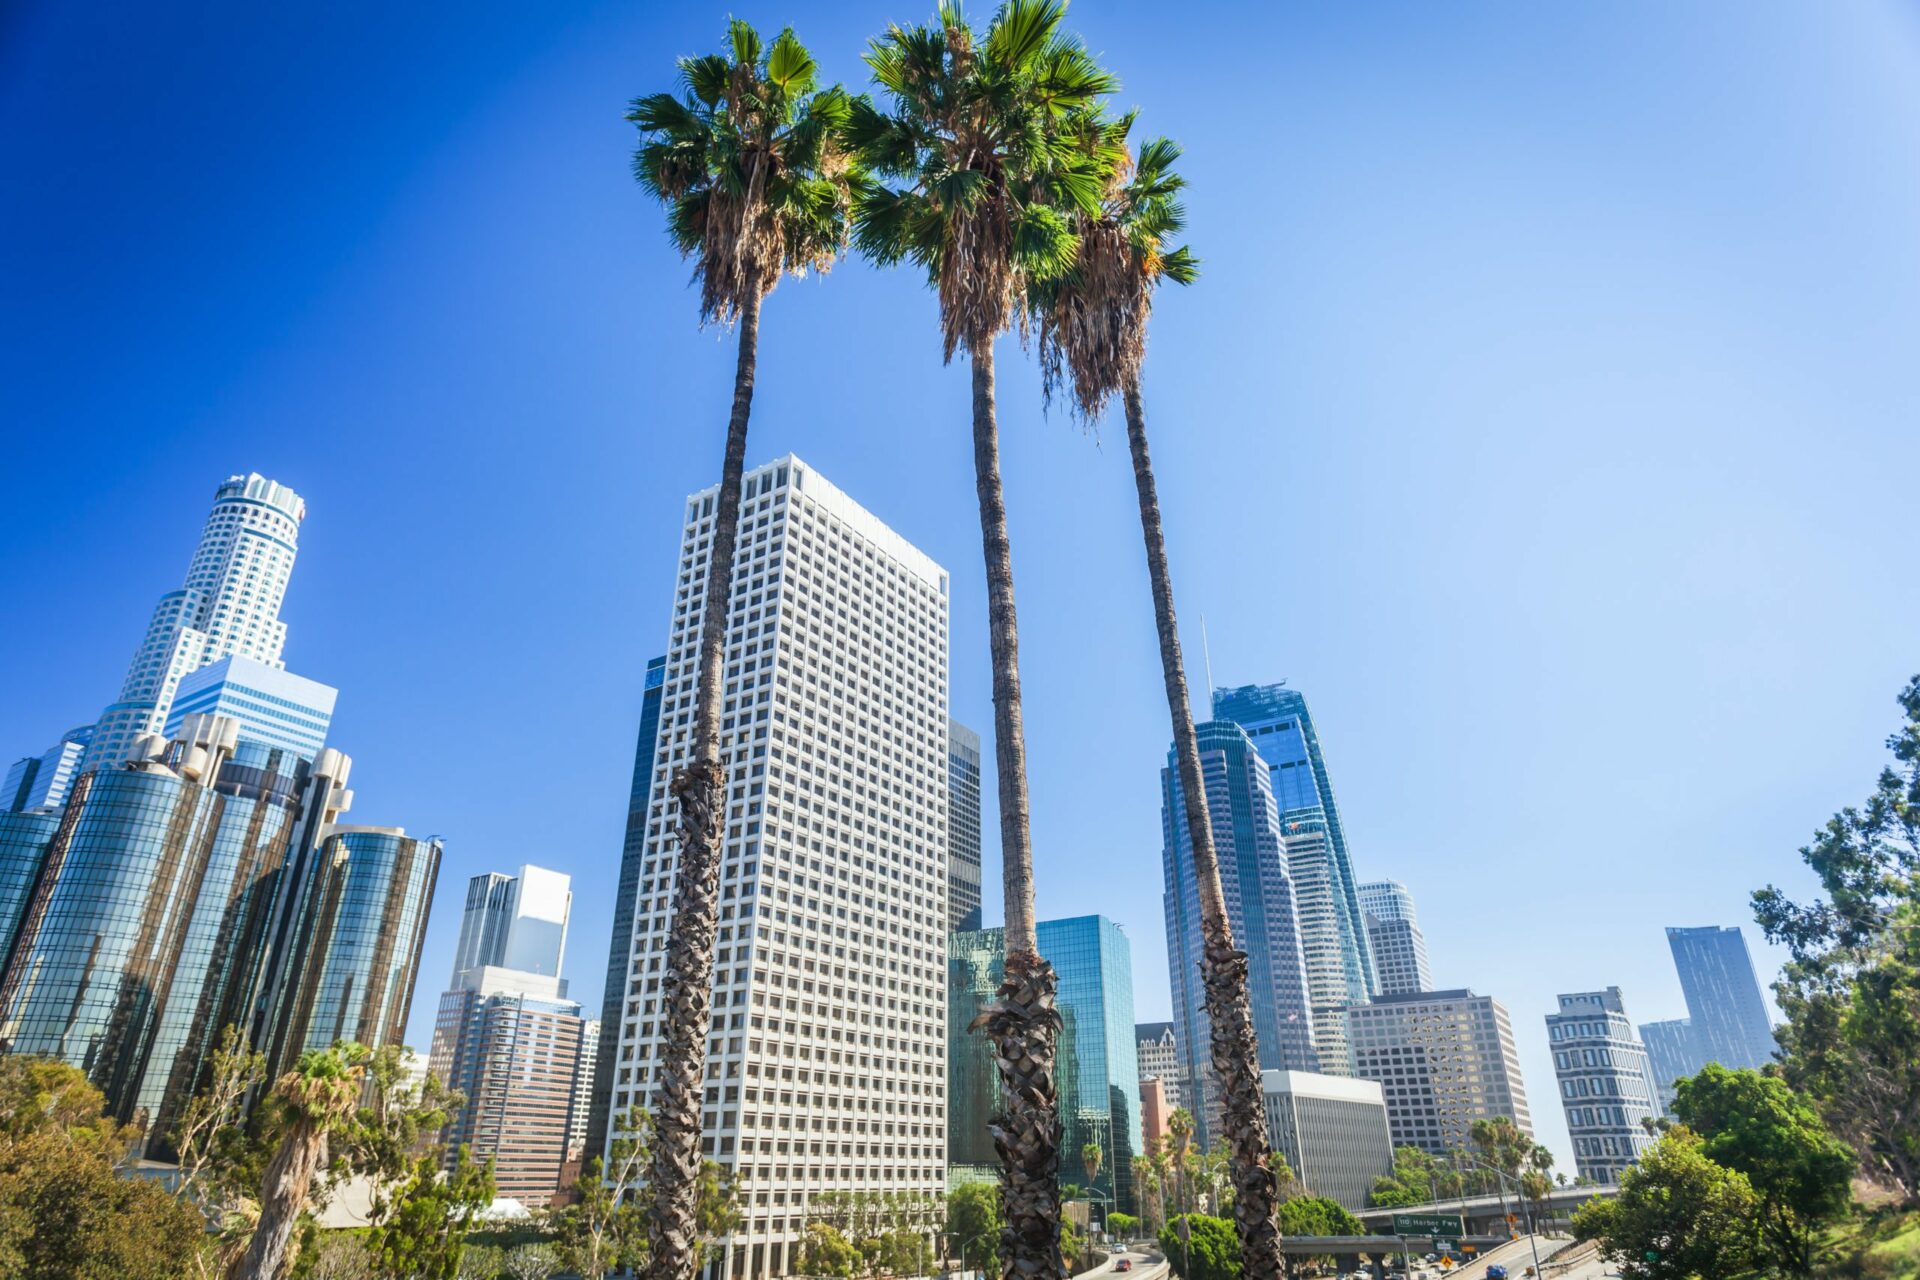 Built in LA: EDO Raised $80M, Laserfiche’s New HQ, and More LA Tech News